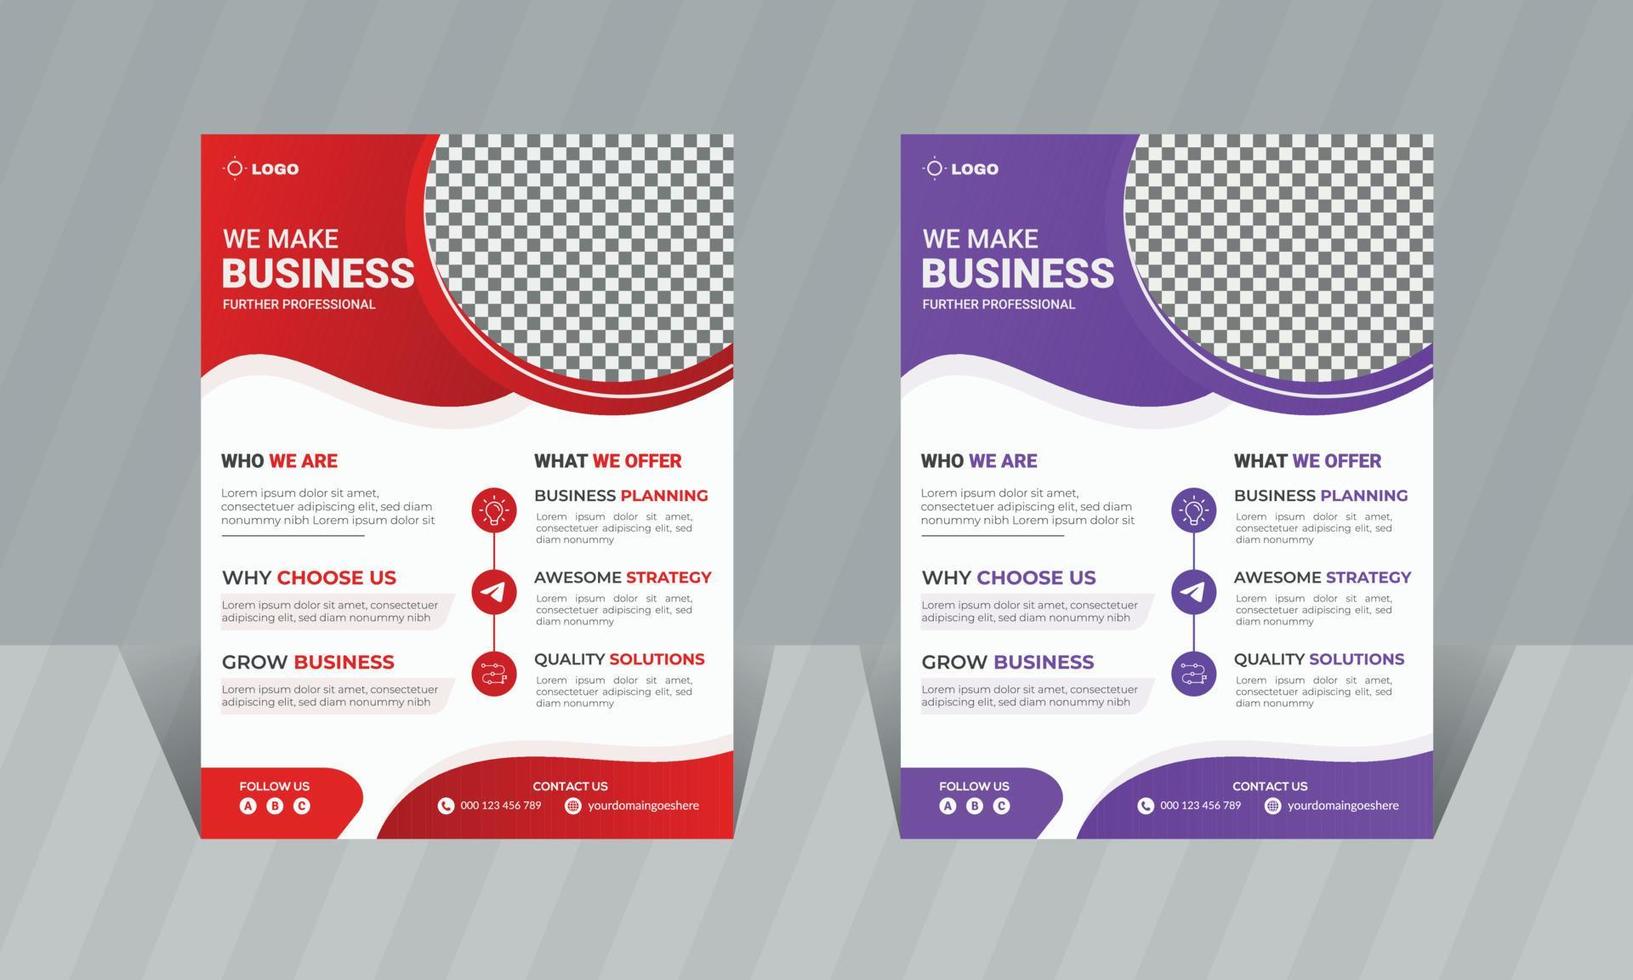 unternehmensgeschäft flyer vorlage broschüre cover vektor design a4 größe business poster flyer layout digitales marketing werben für förderung und publikation